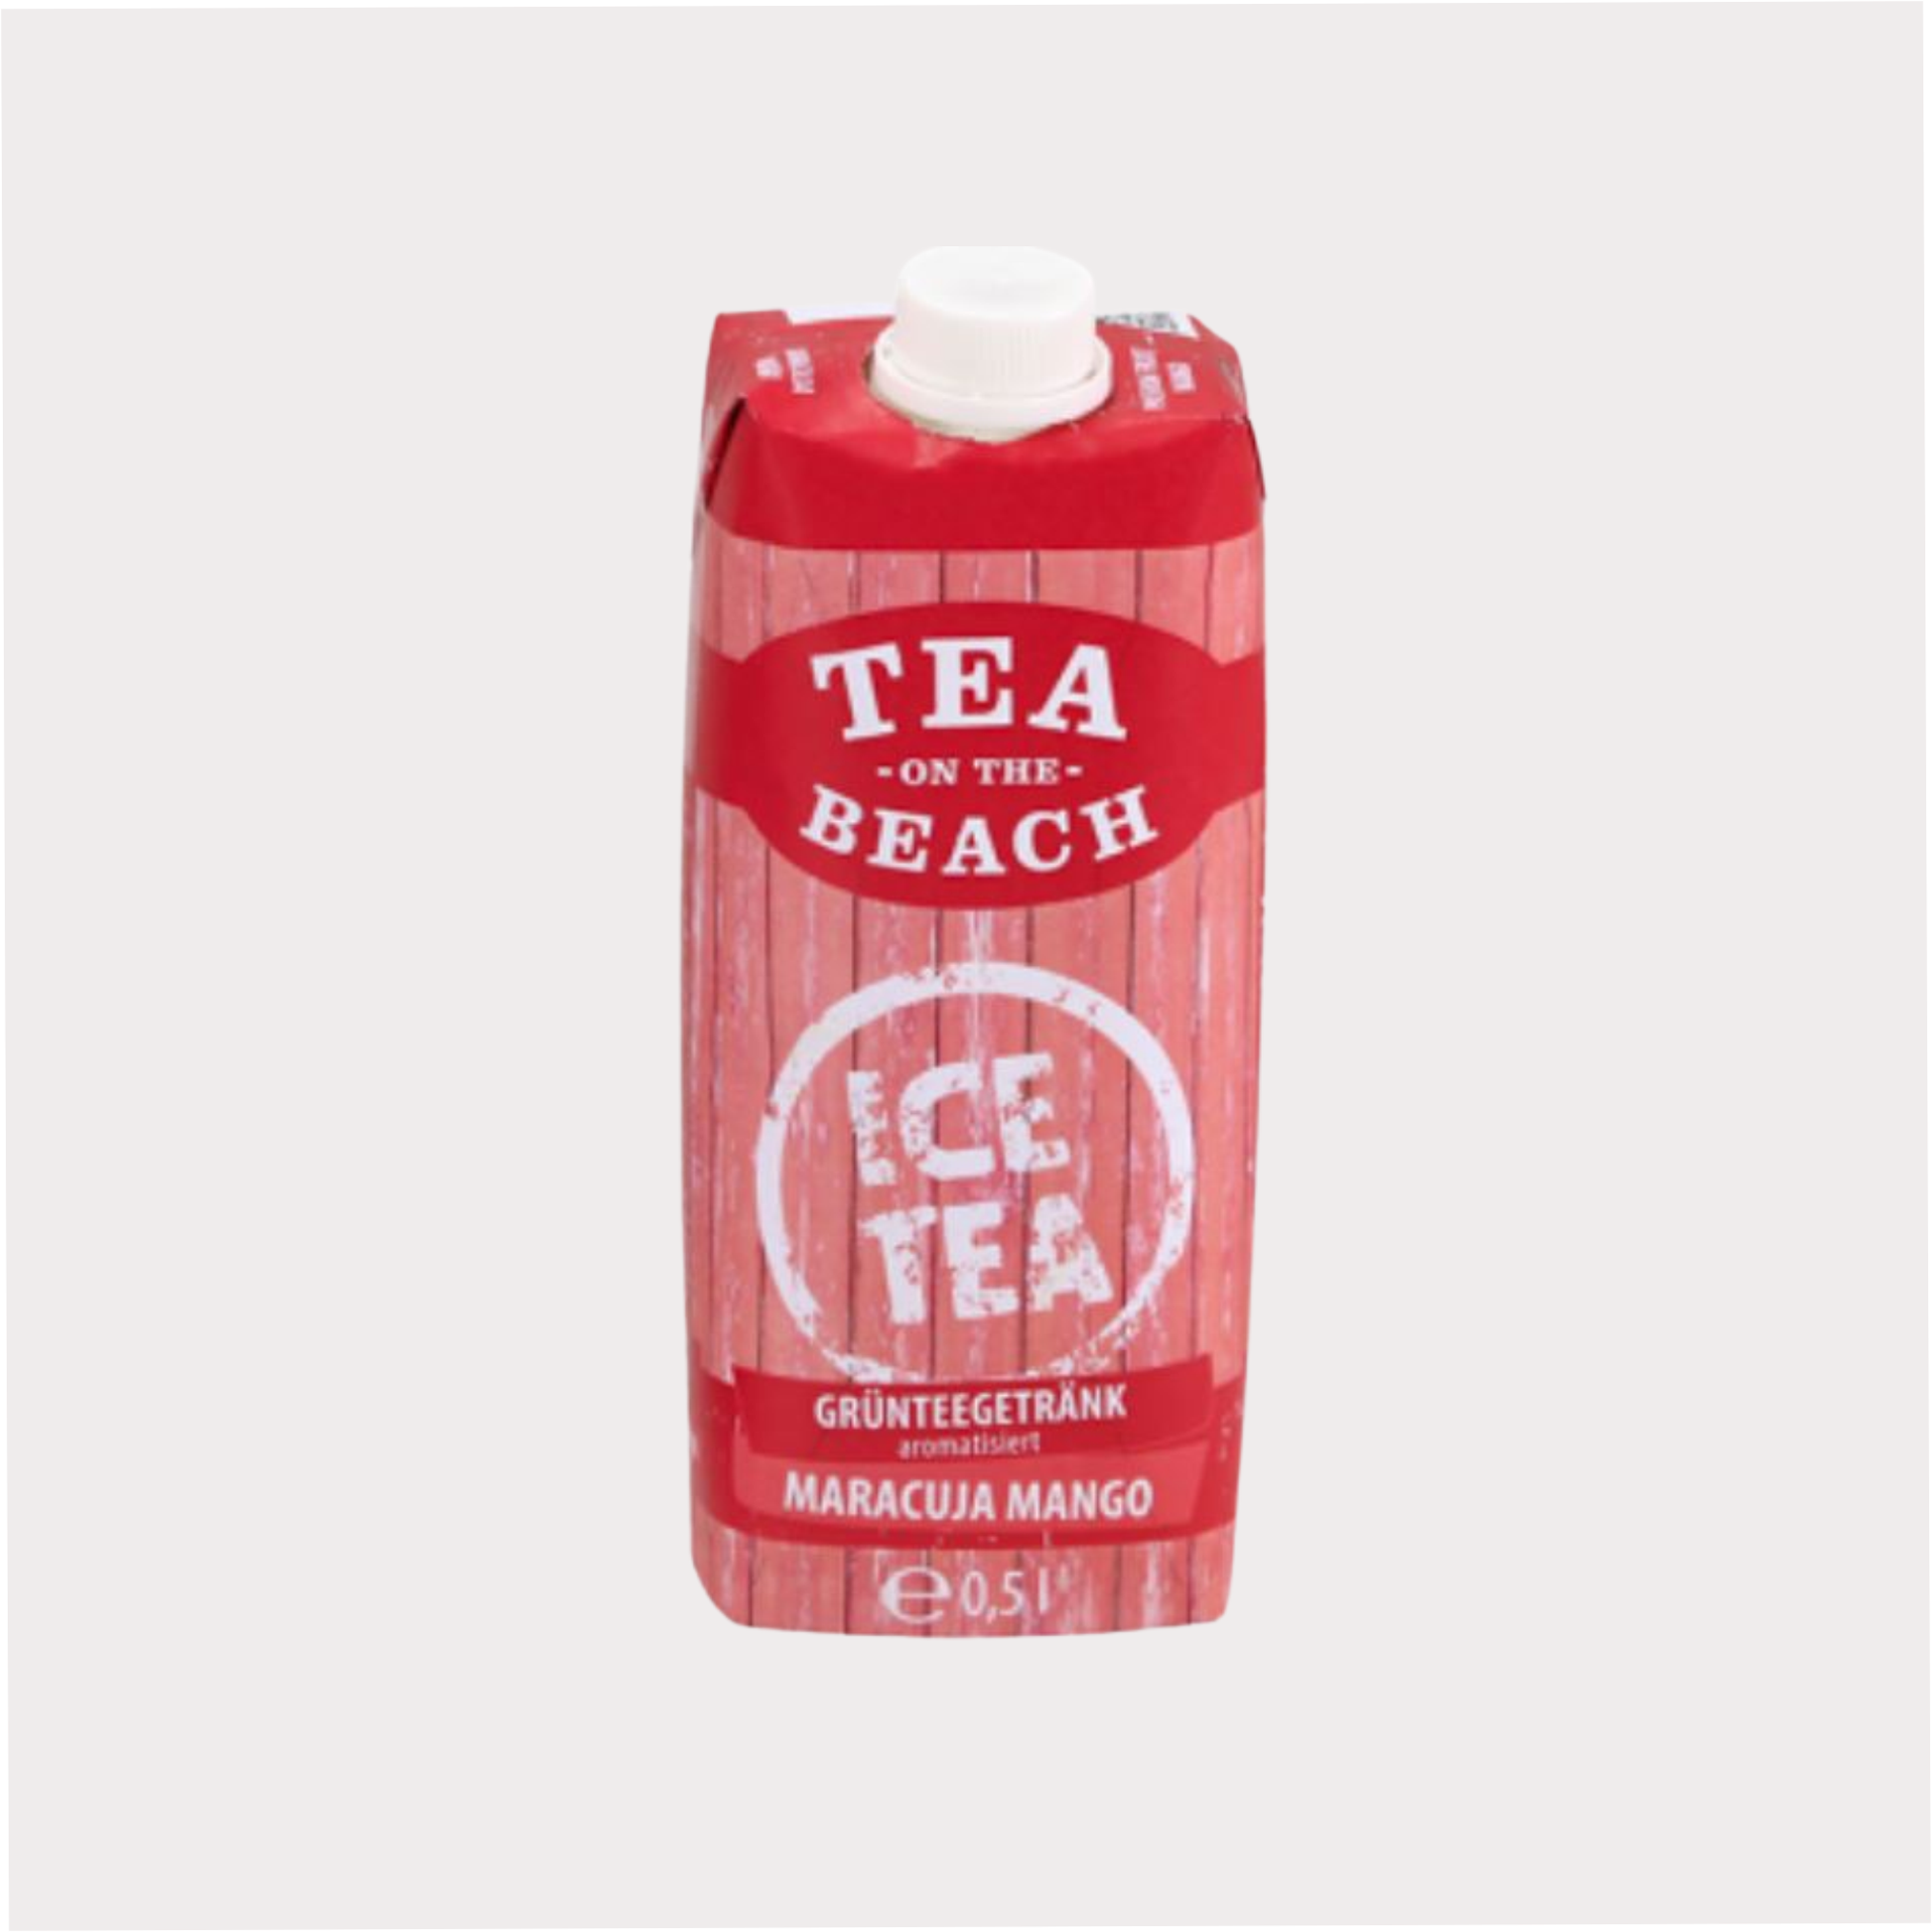 Tea on the Beach Grünteegetränk Maracuja Mango aromatisiert